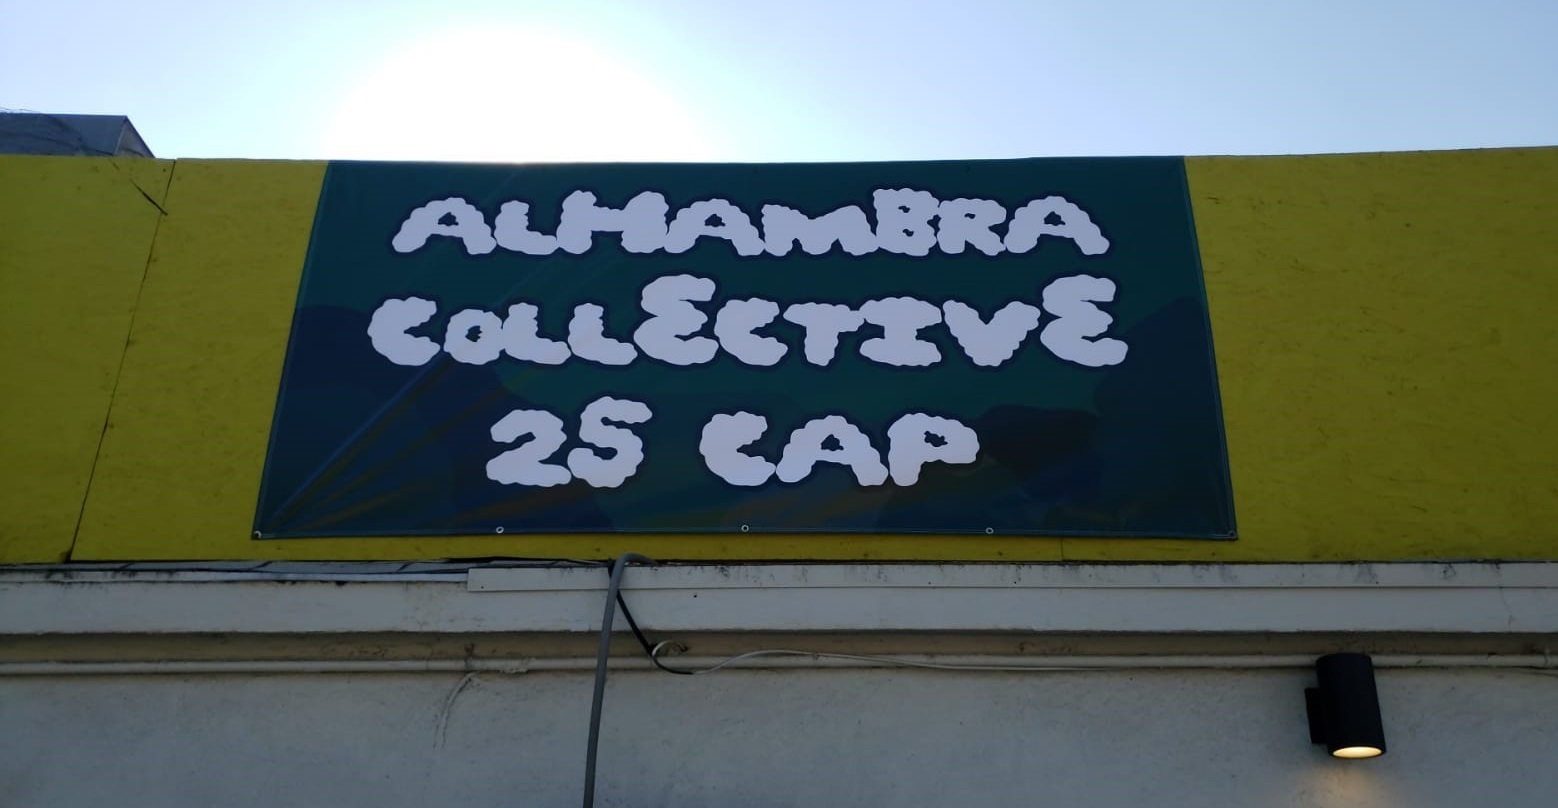 Alhambra Collective 25 Cap - Medical Marijuana Doctors - Cannabizme.com